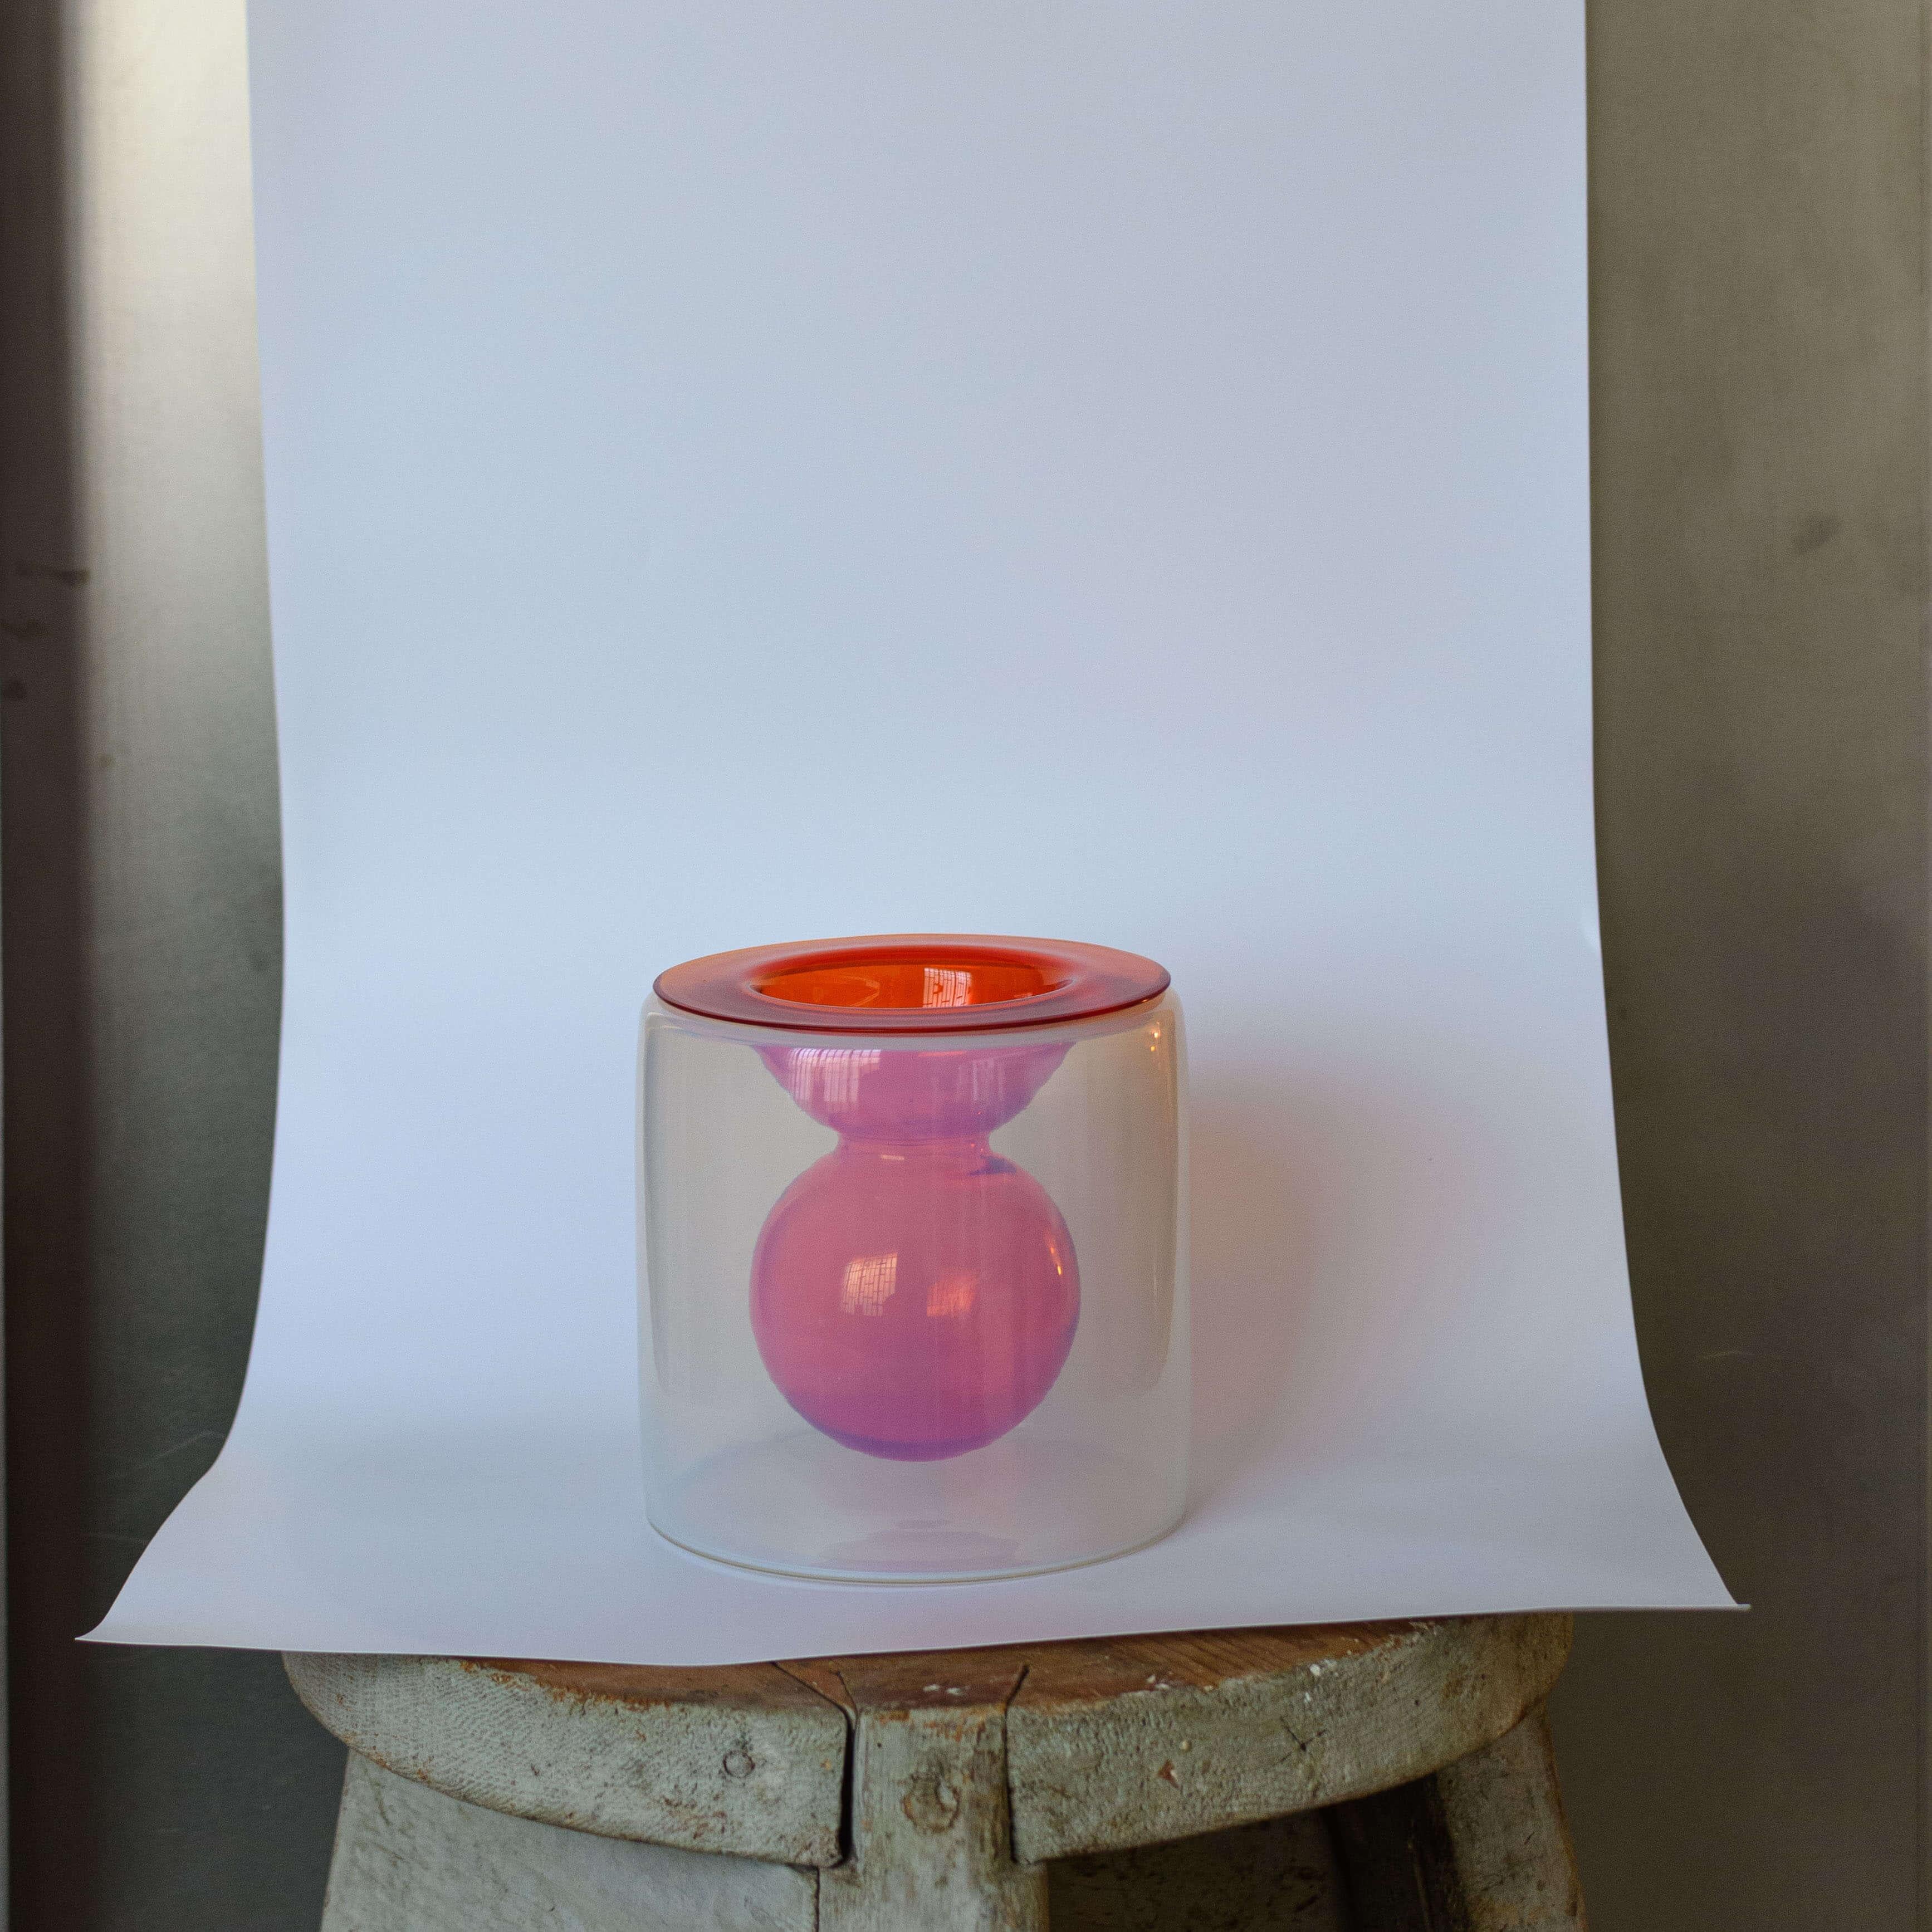 Il s'agit d'un rare et extrêmement fascinant vase à deux corps en verre de Murano. Conçue par Ermanno Nason pour I.V.R. Mazzega dans les années 1980, elle est l'expression parfaite de l'esthétique pop de l'époque, incarnée par les pièces colorées du